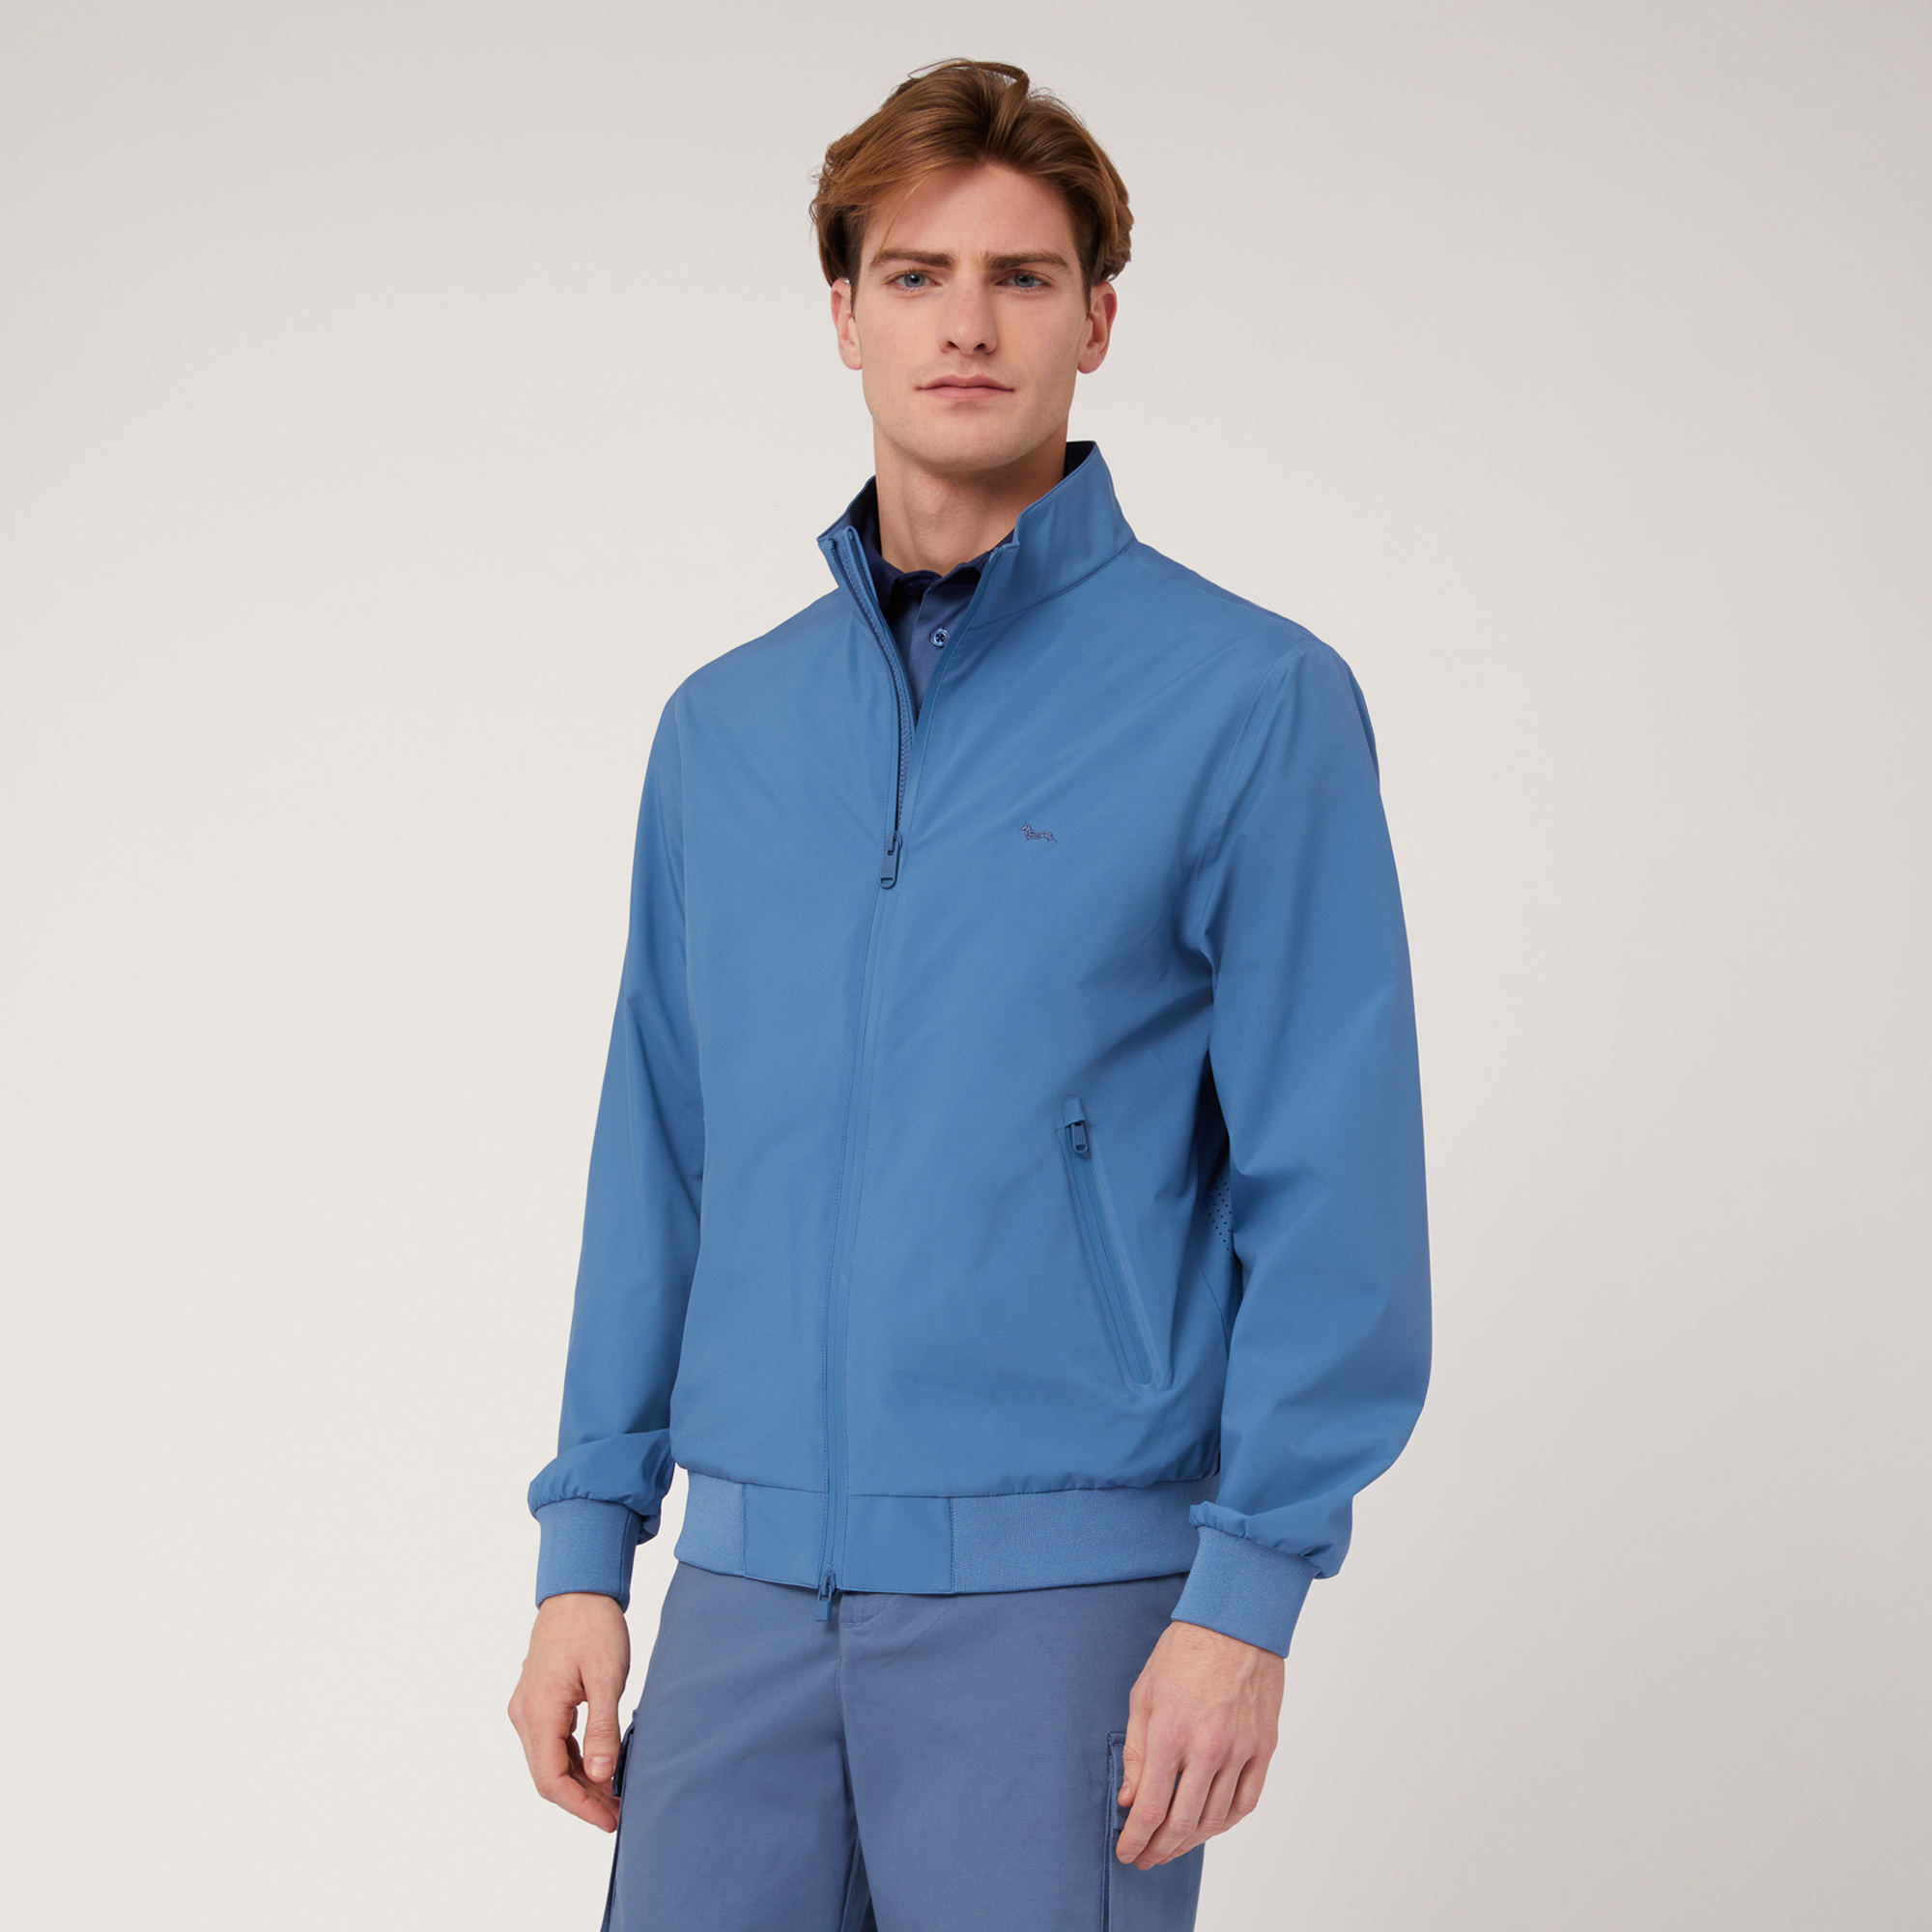 Softshell Jacket, Blue, large